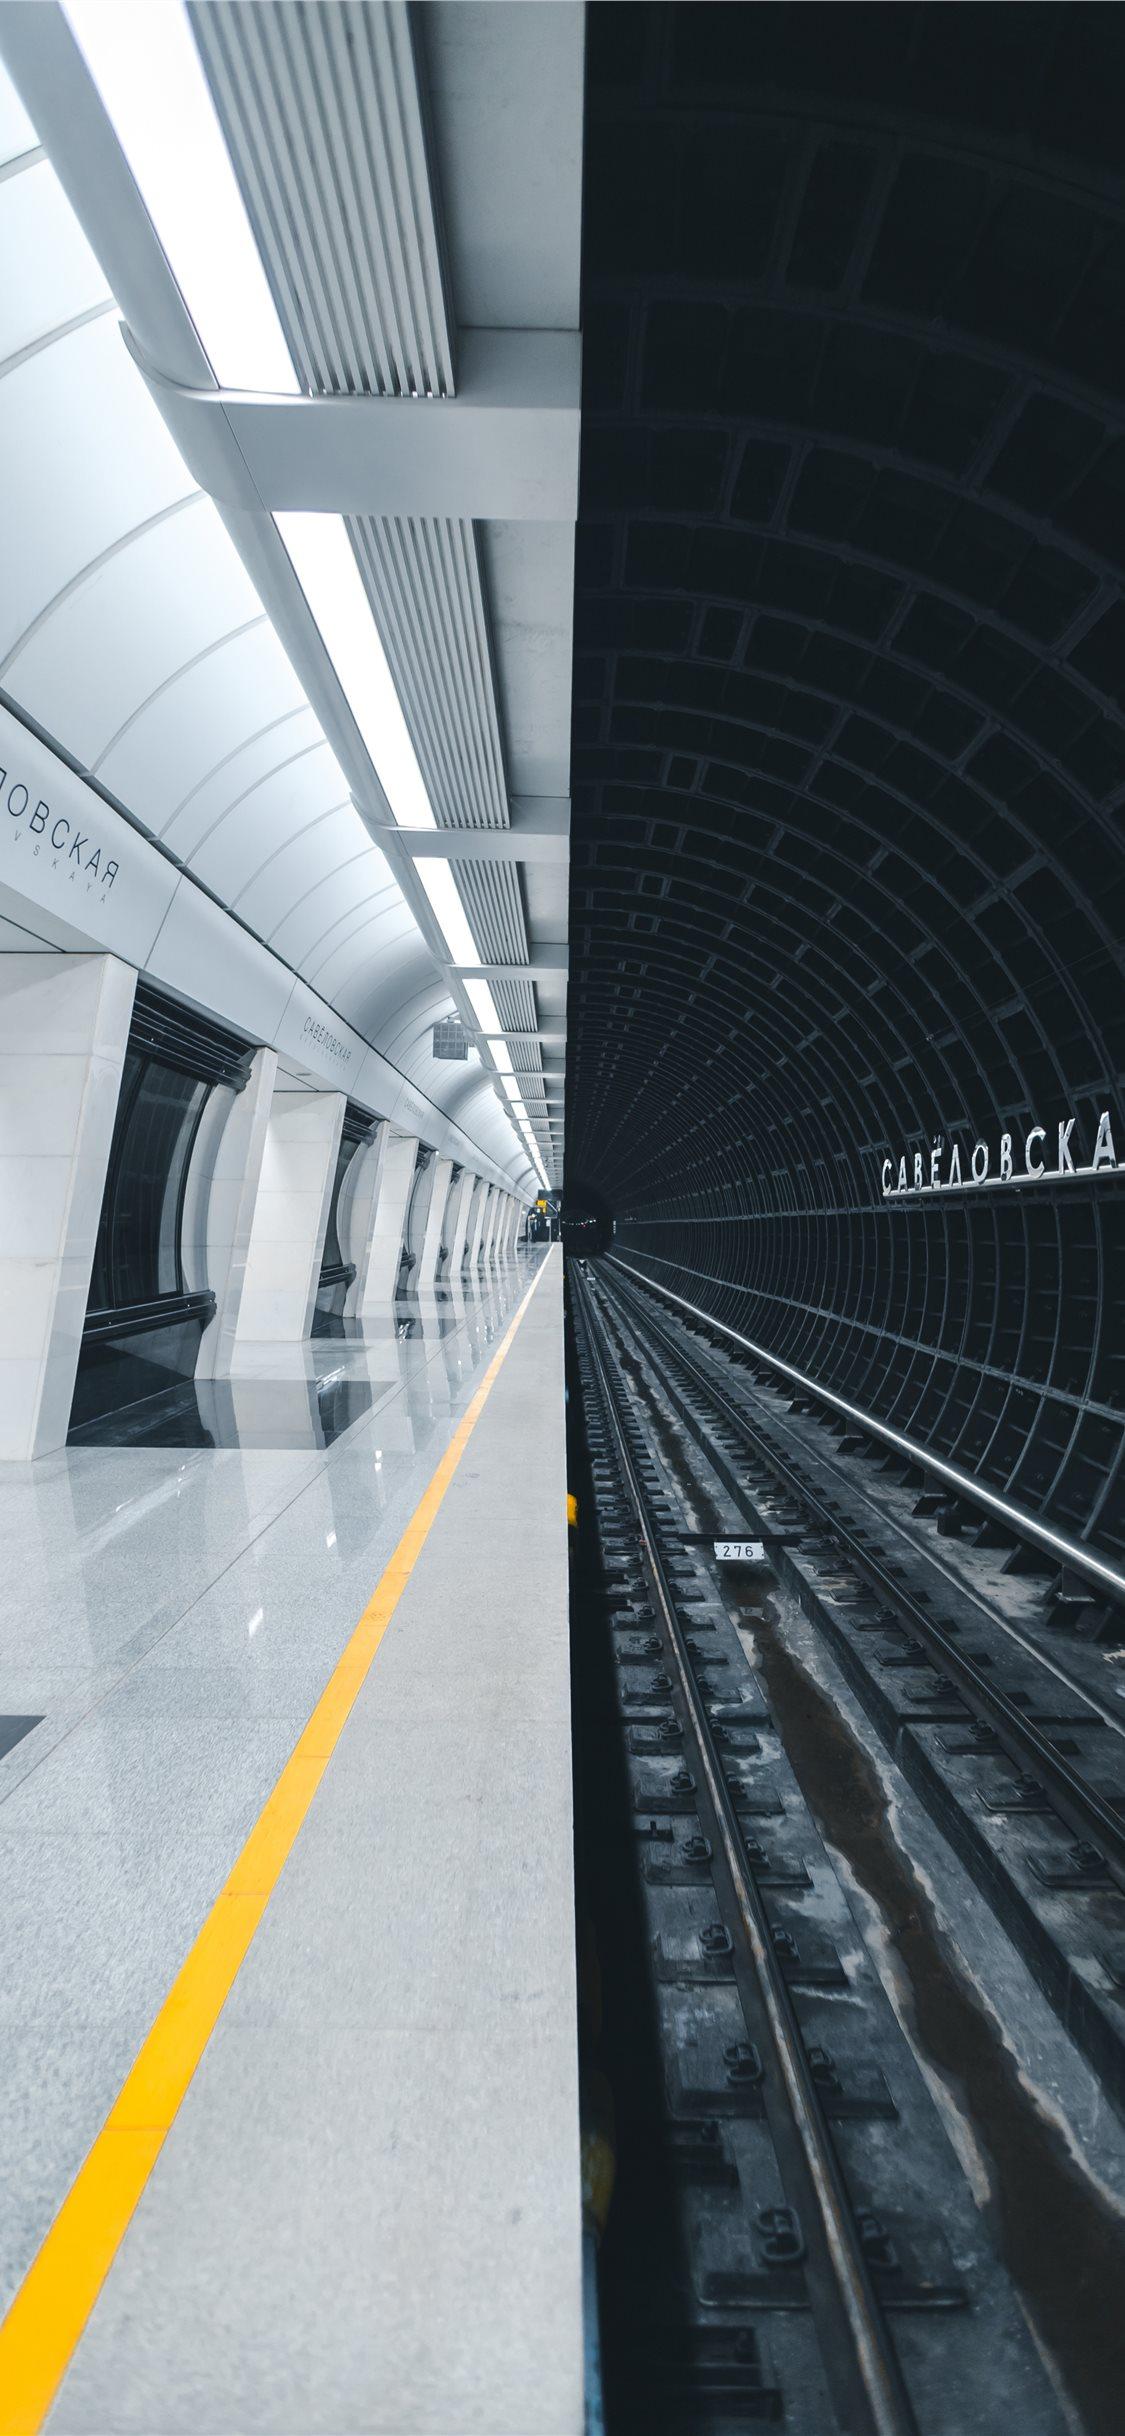 Metro station Savelovskaya iPhone X Wallpaper Free Download